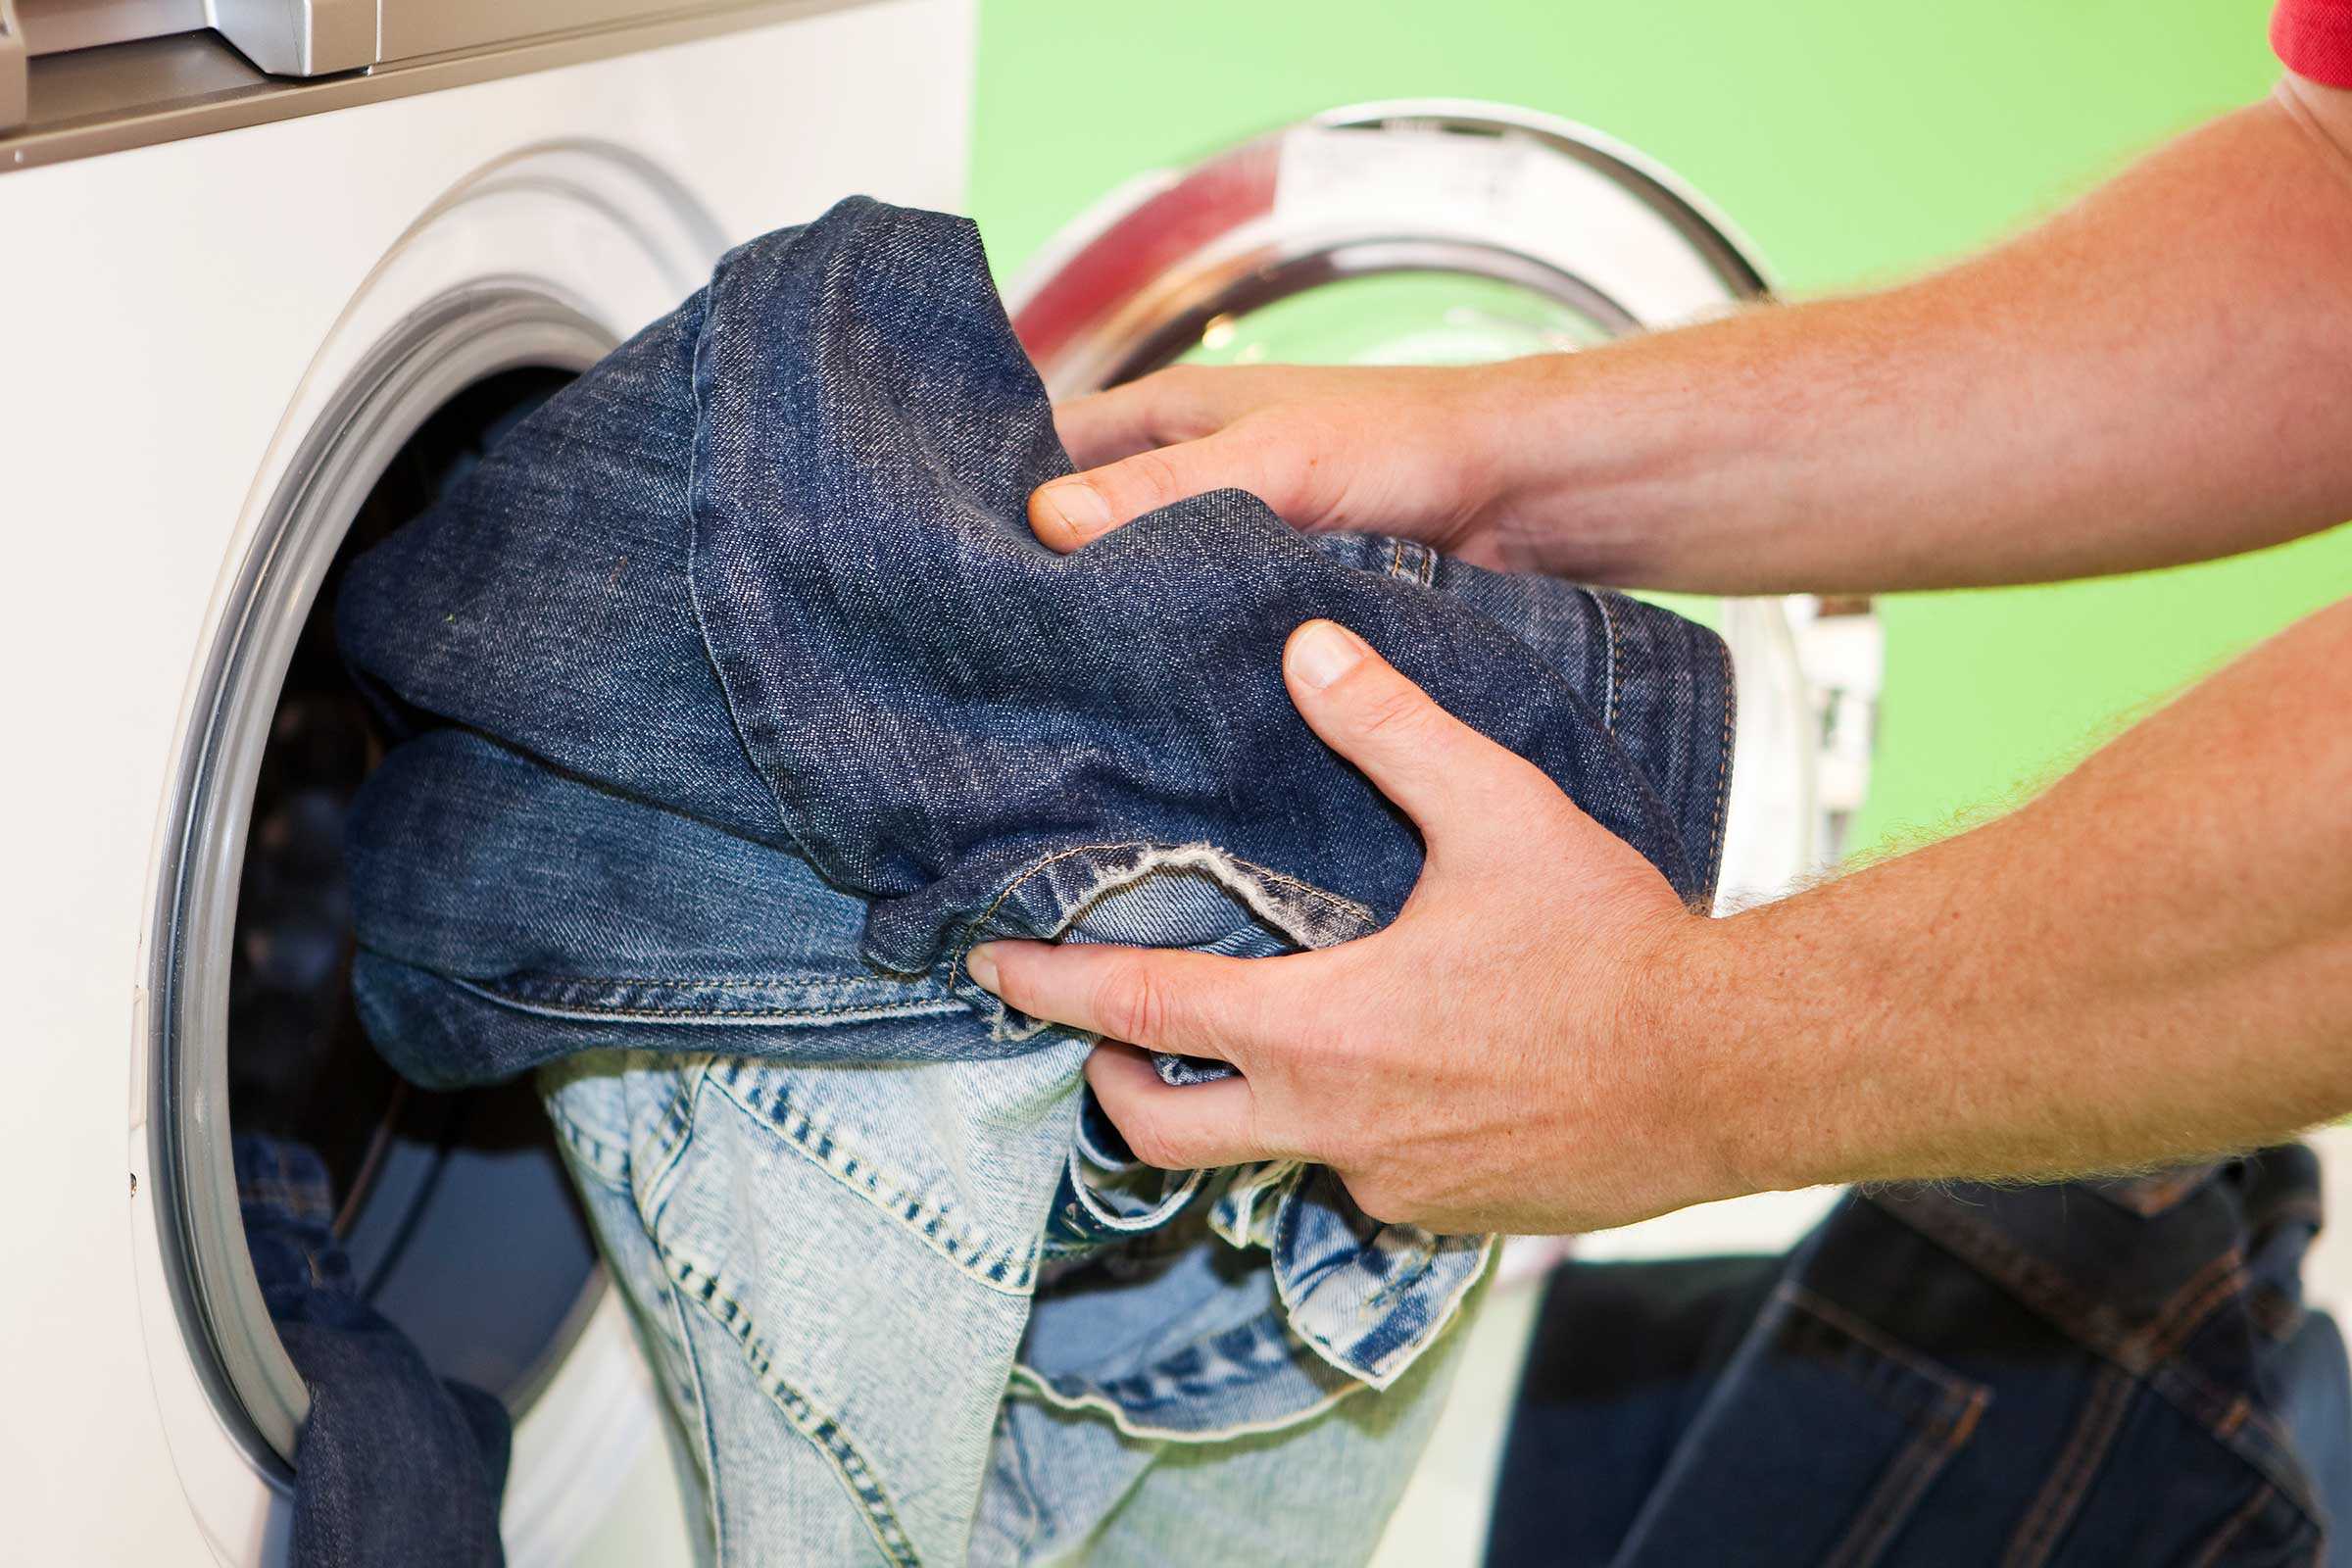 Уменьшить растянувшиеся джинсы можно с помощью стирки при высокой температуре воды и быстрой сушки в сушильном аппарате, а также посредством кипячения, вымачивания и другими способами